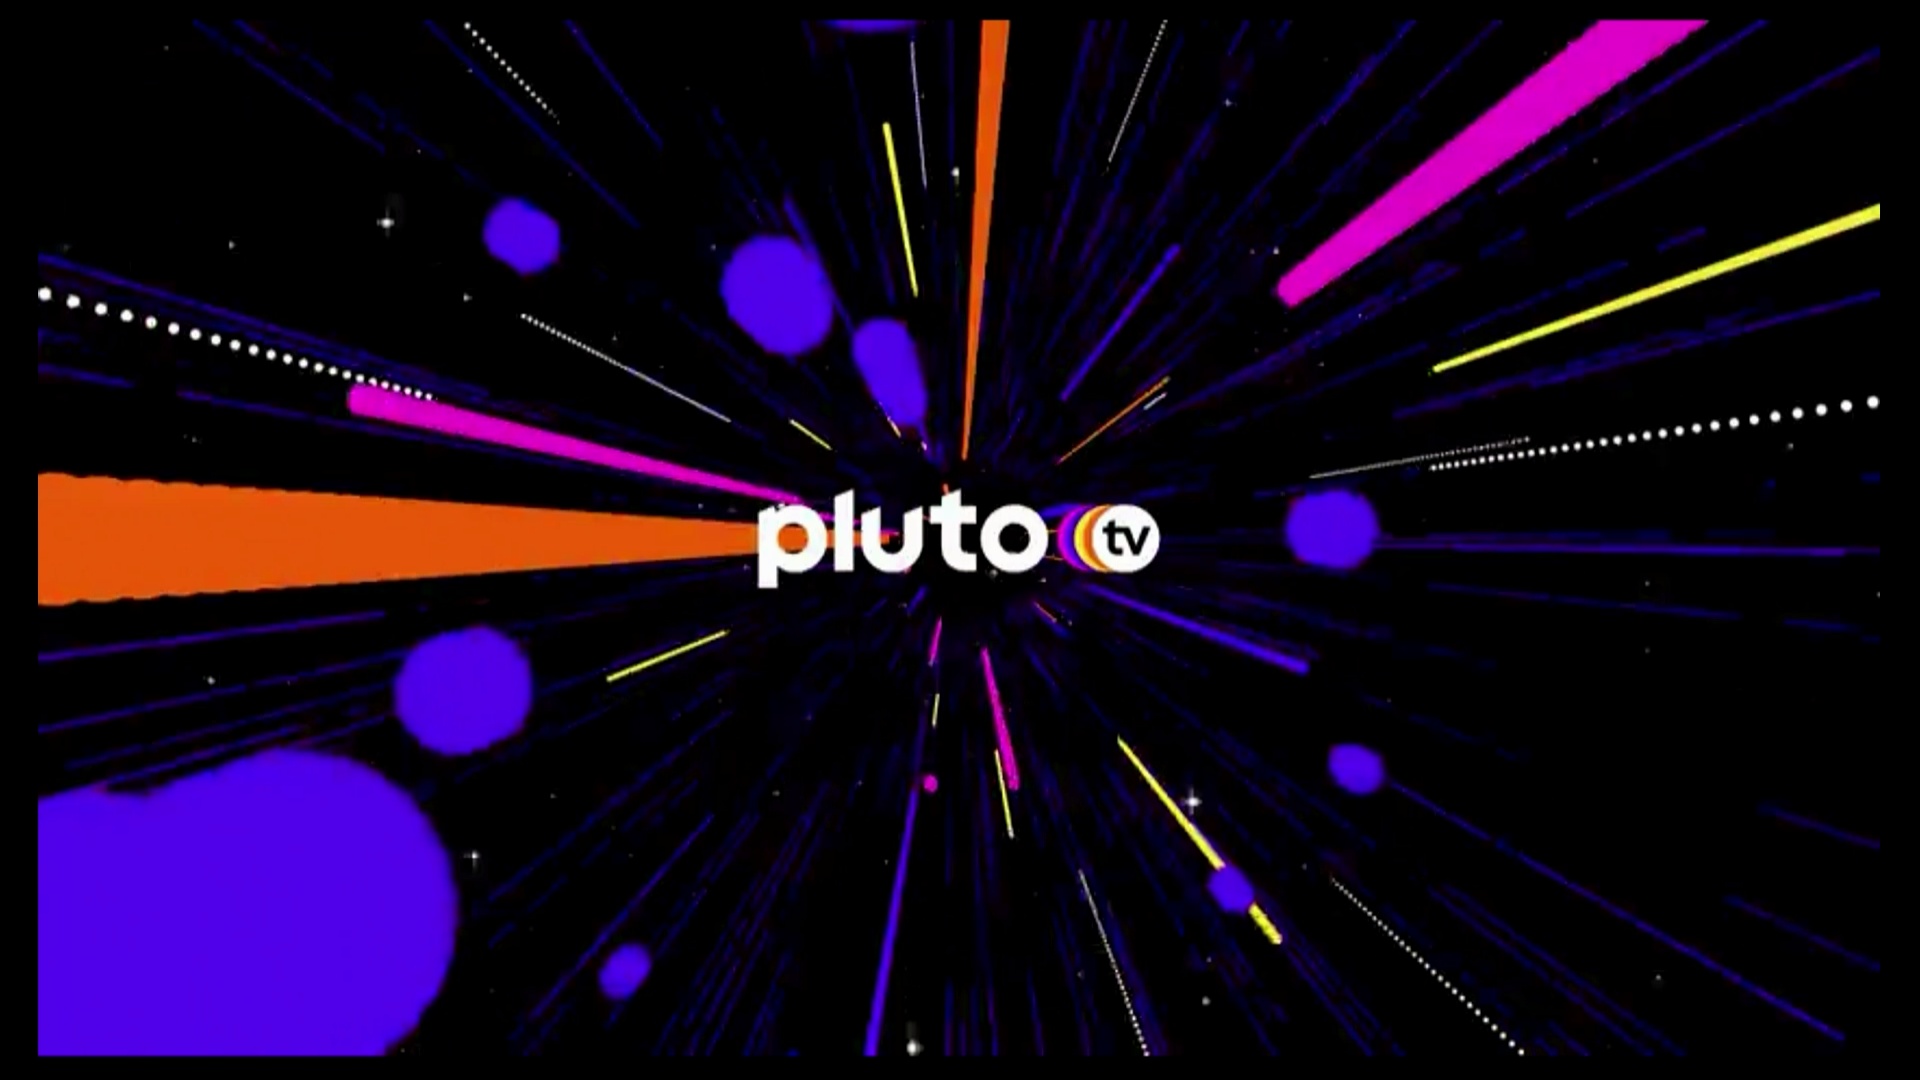 #Pluto TV: Neue DAZN-Inhalte und Sender im März